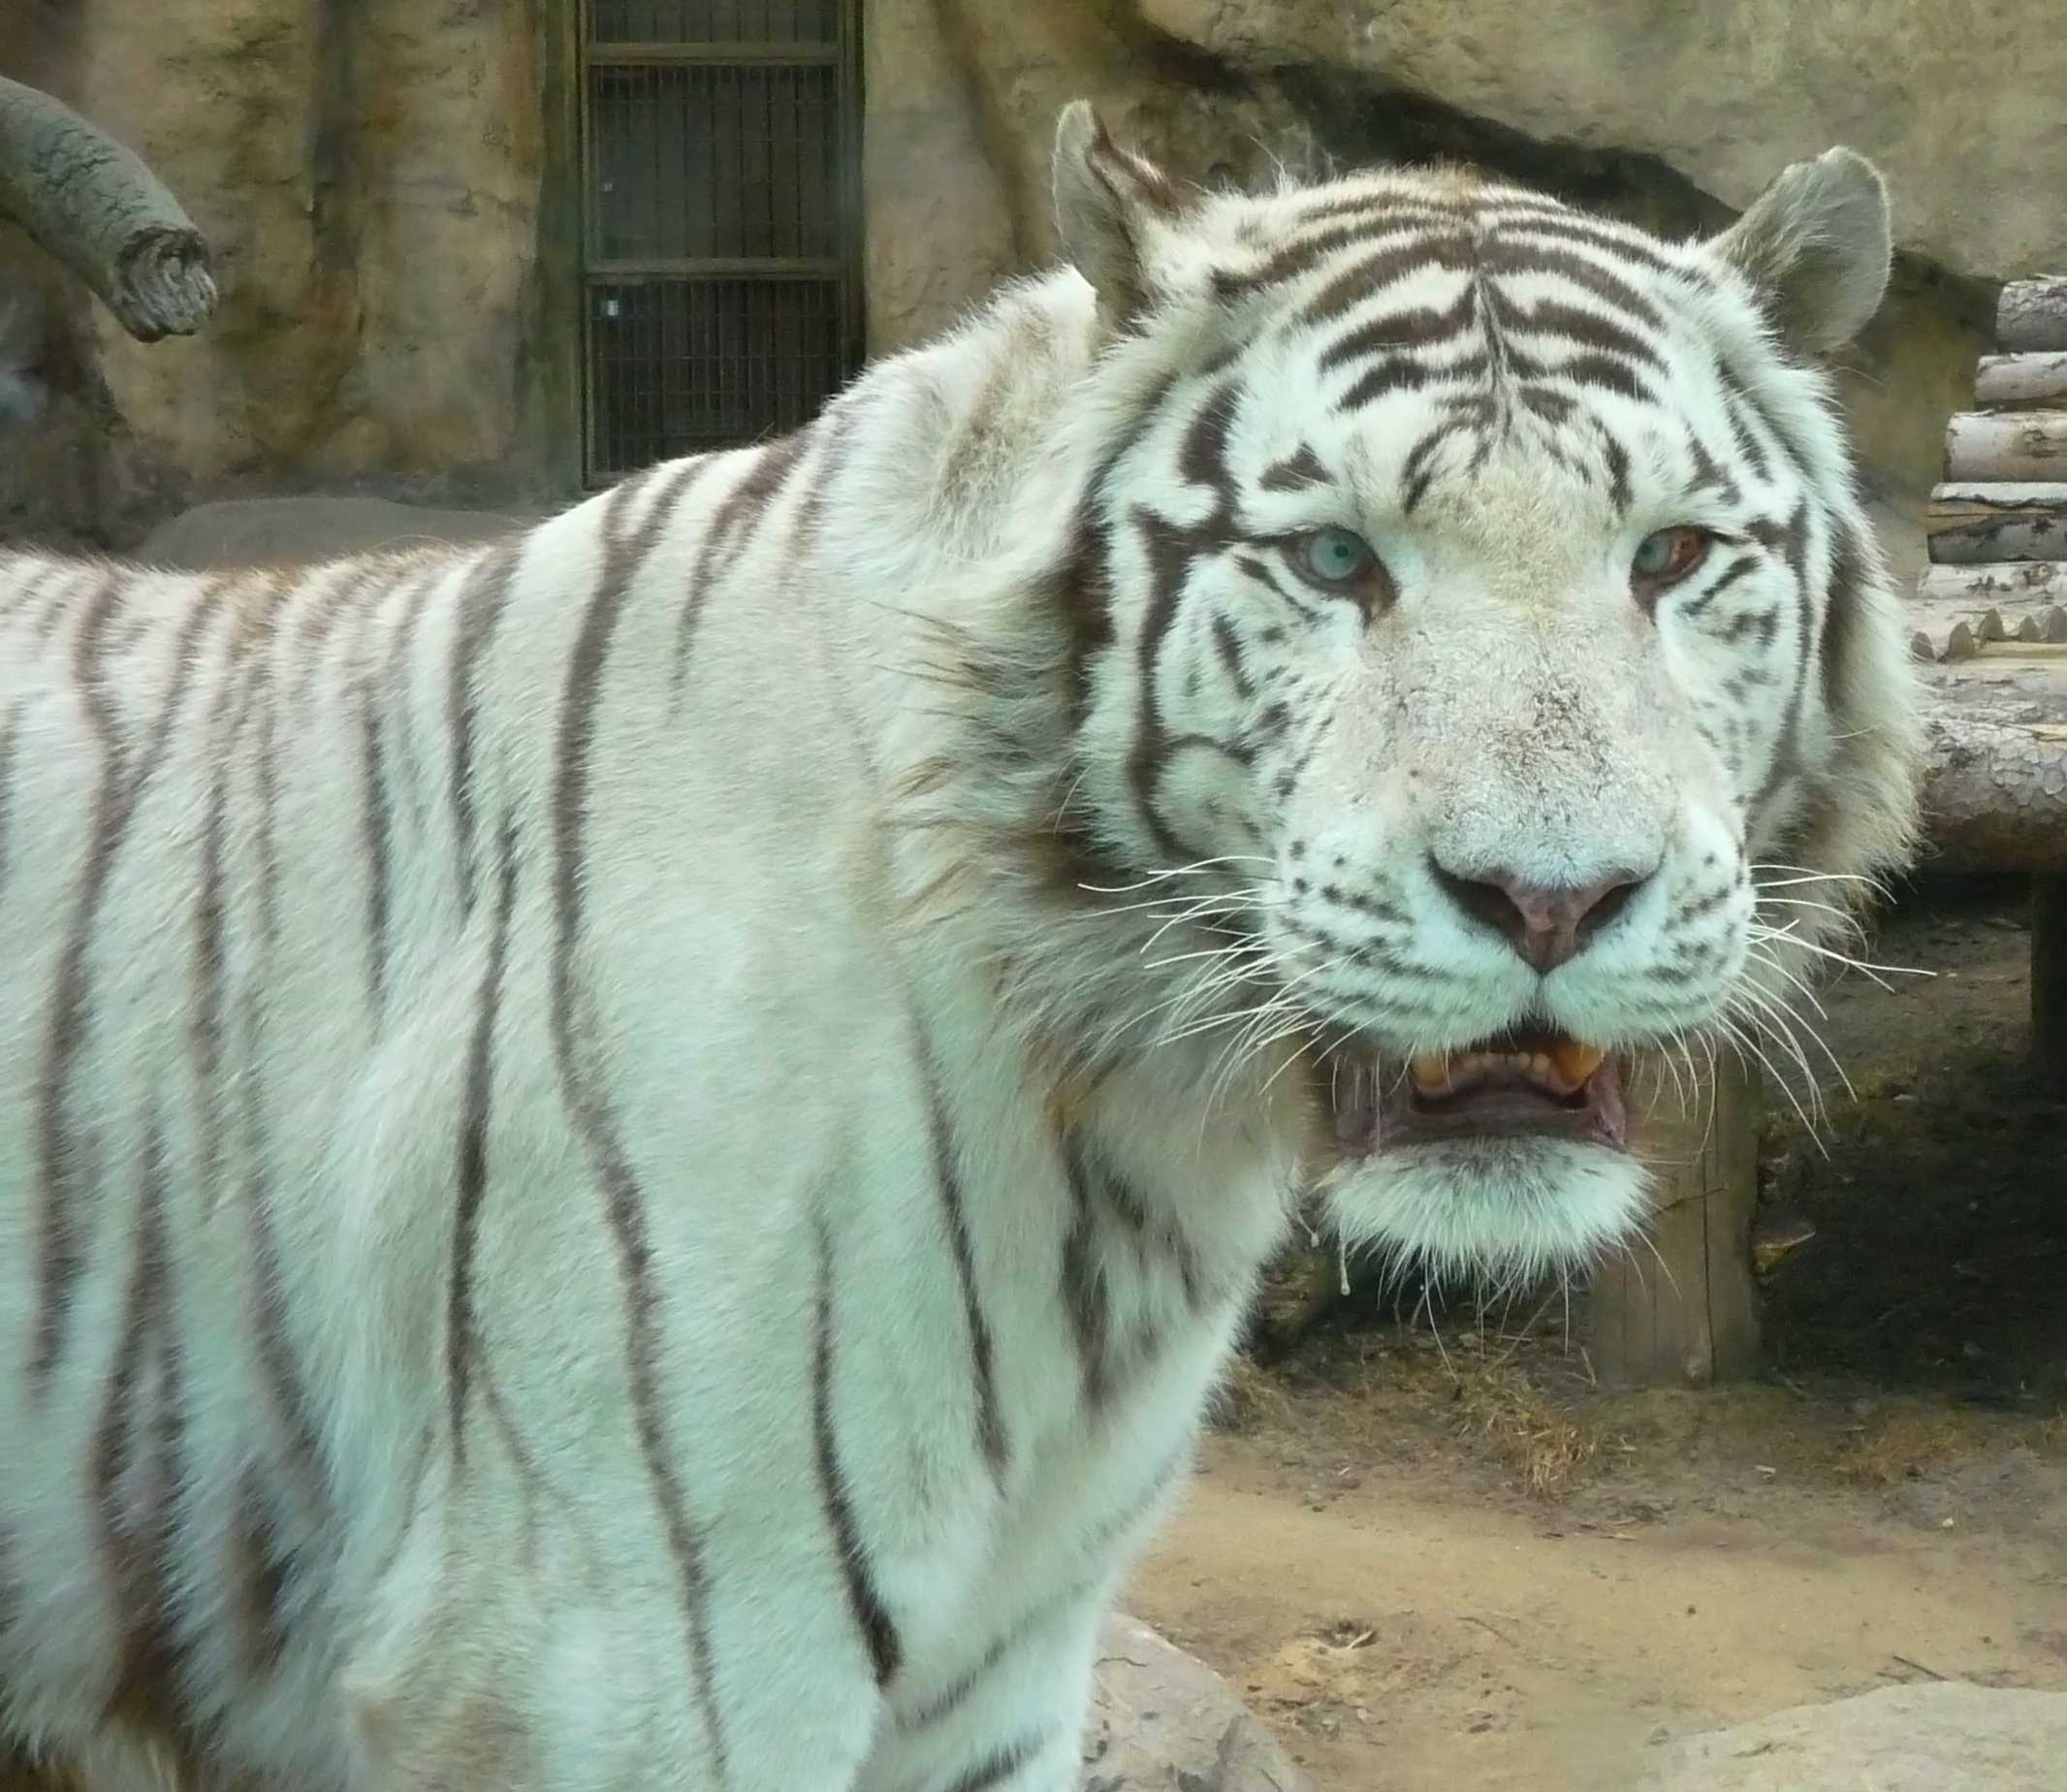 Сколько белых тигров останется в мире к 2021 году? – celebrity.fm - официальные звезды №1, деловая и людская сеть, wiki, история успеха, биография и цитаты